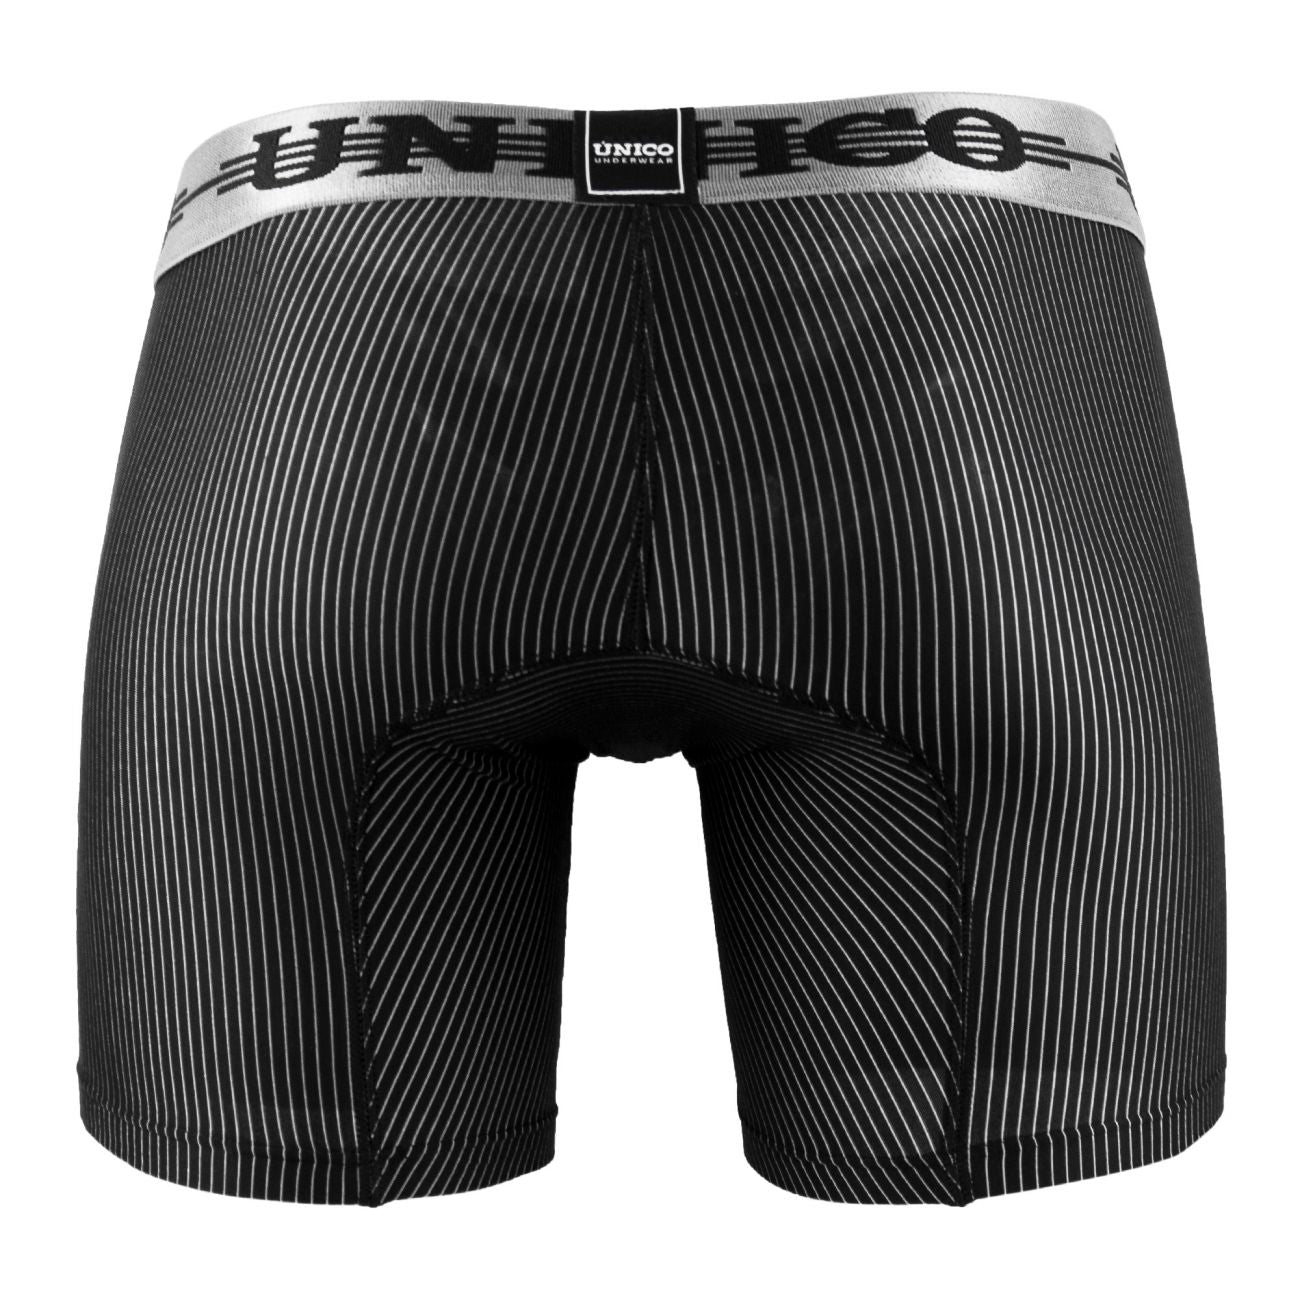 Unico 1802010020199 Boxer Briefs Trend Black